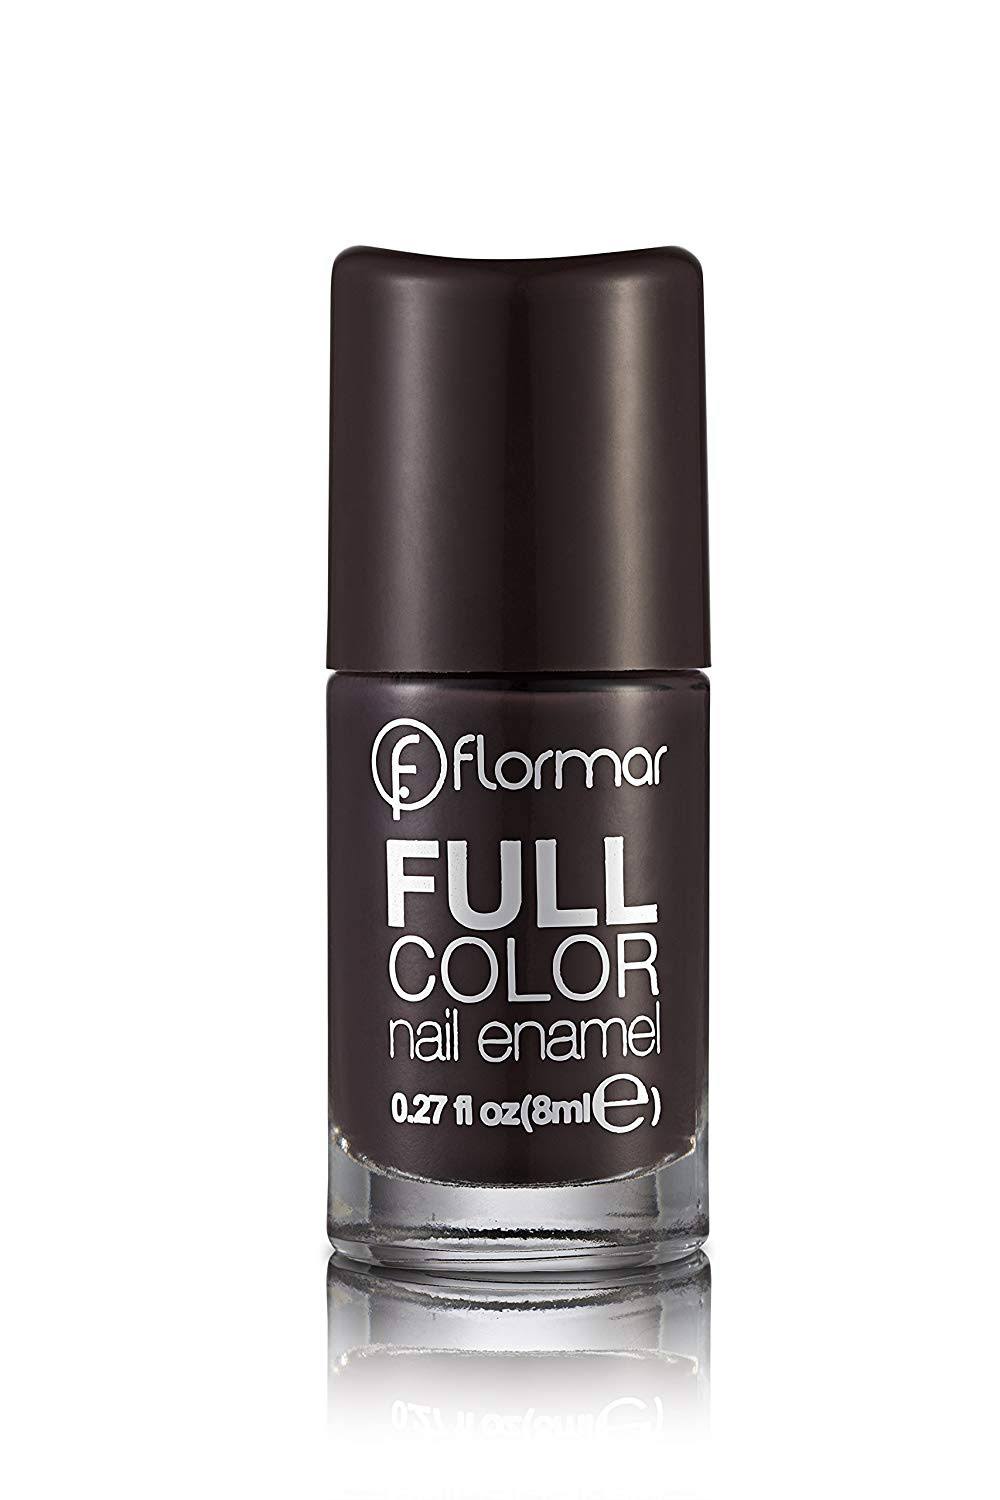 Flormar Full Color Nail Enamel - FC44 Tropic Brown, 8ml